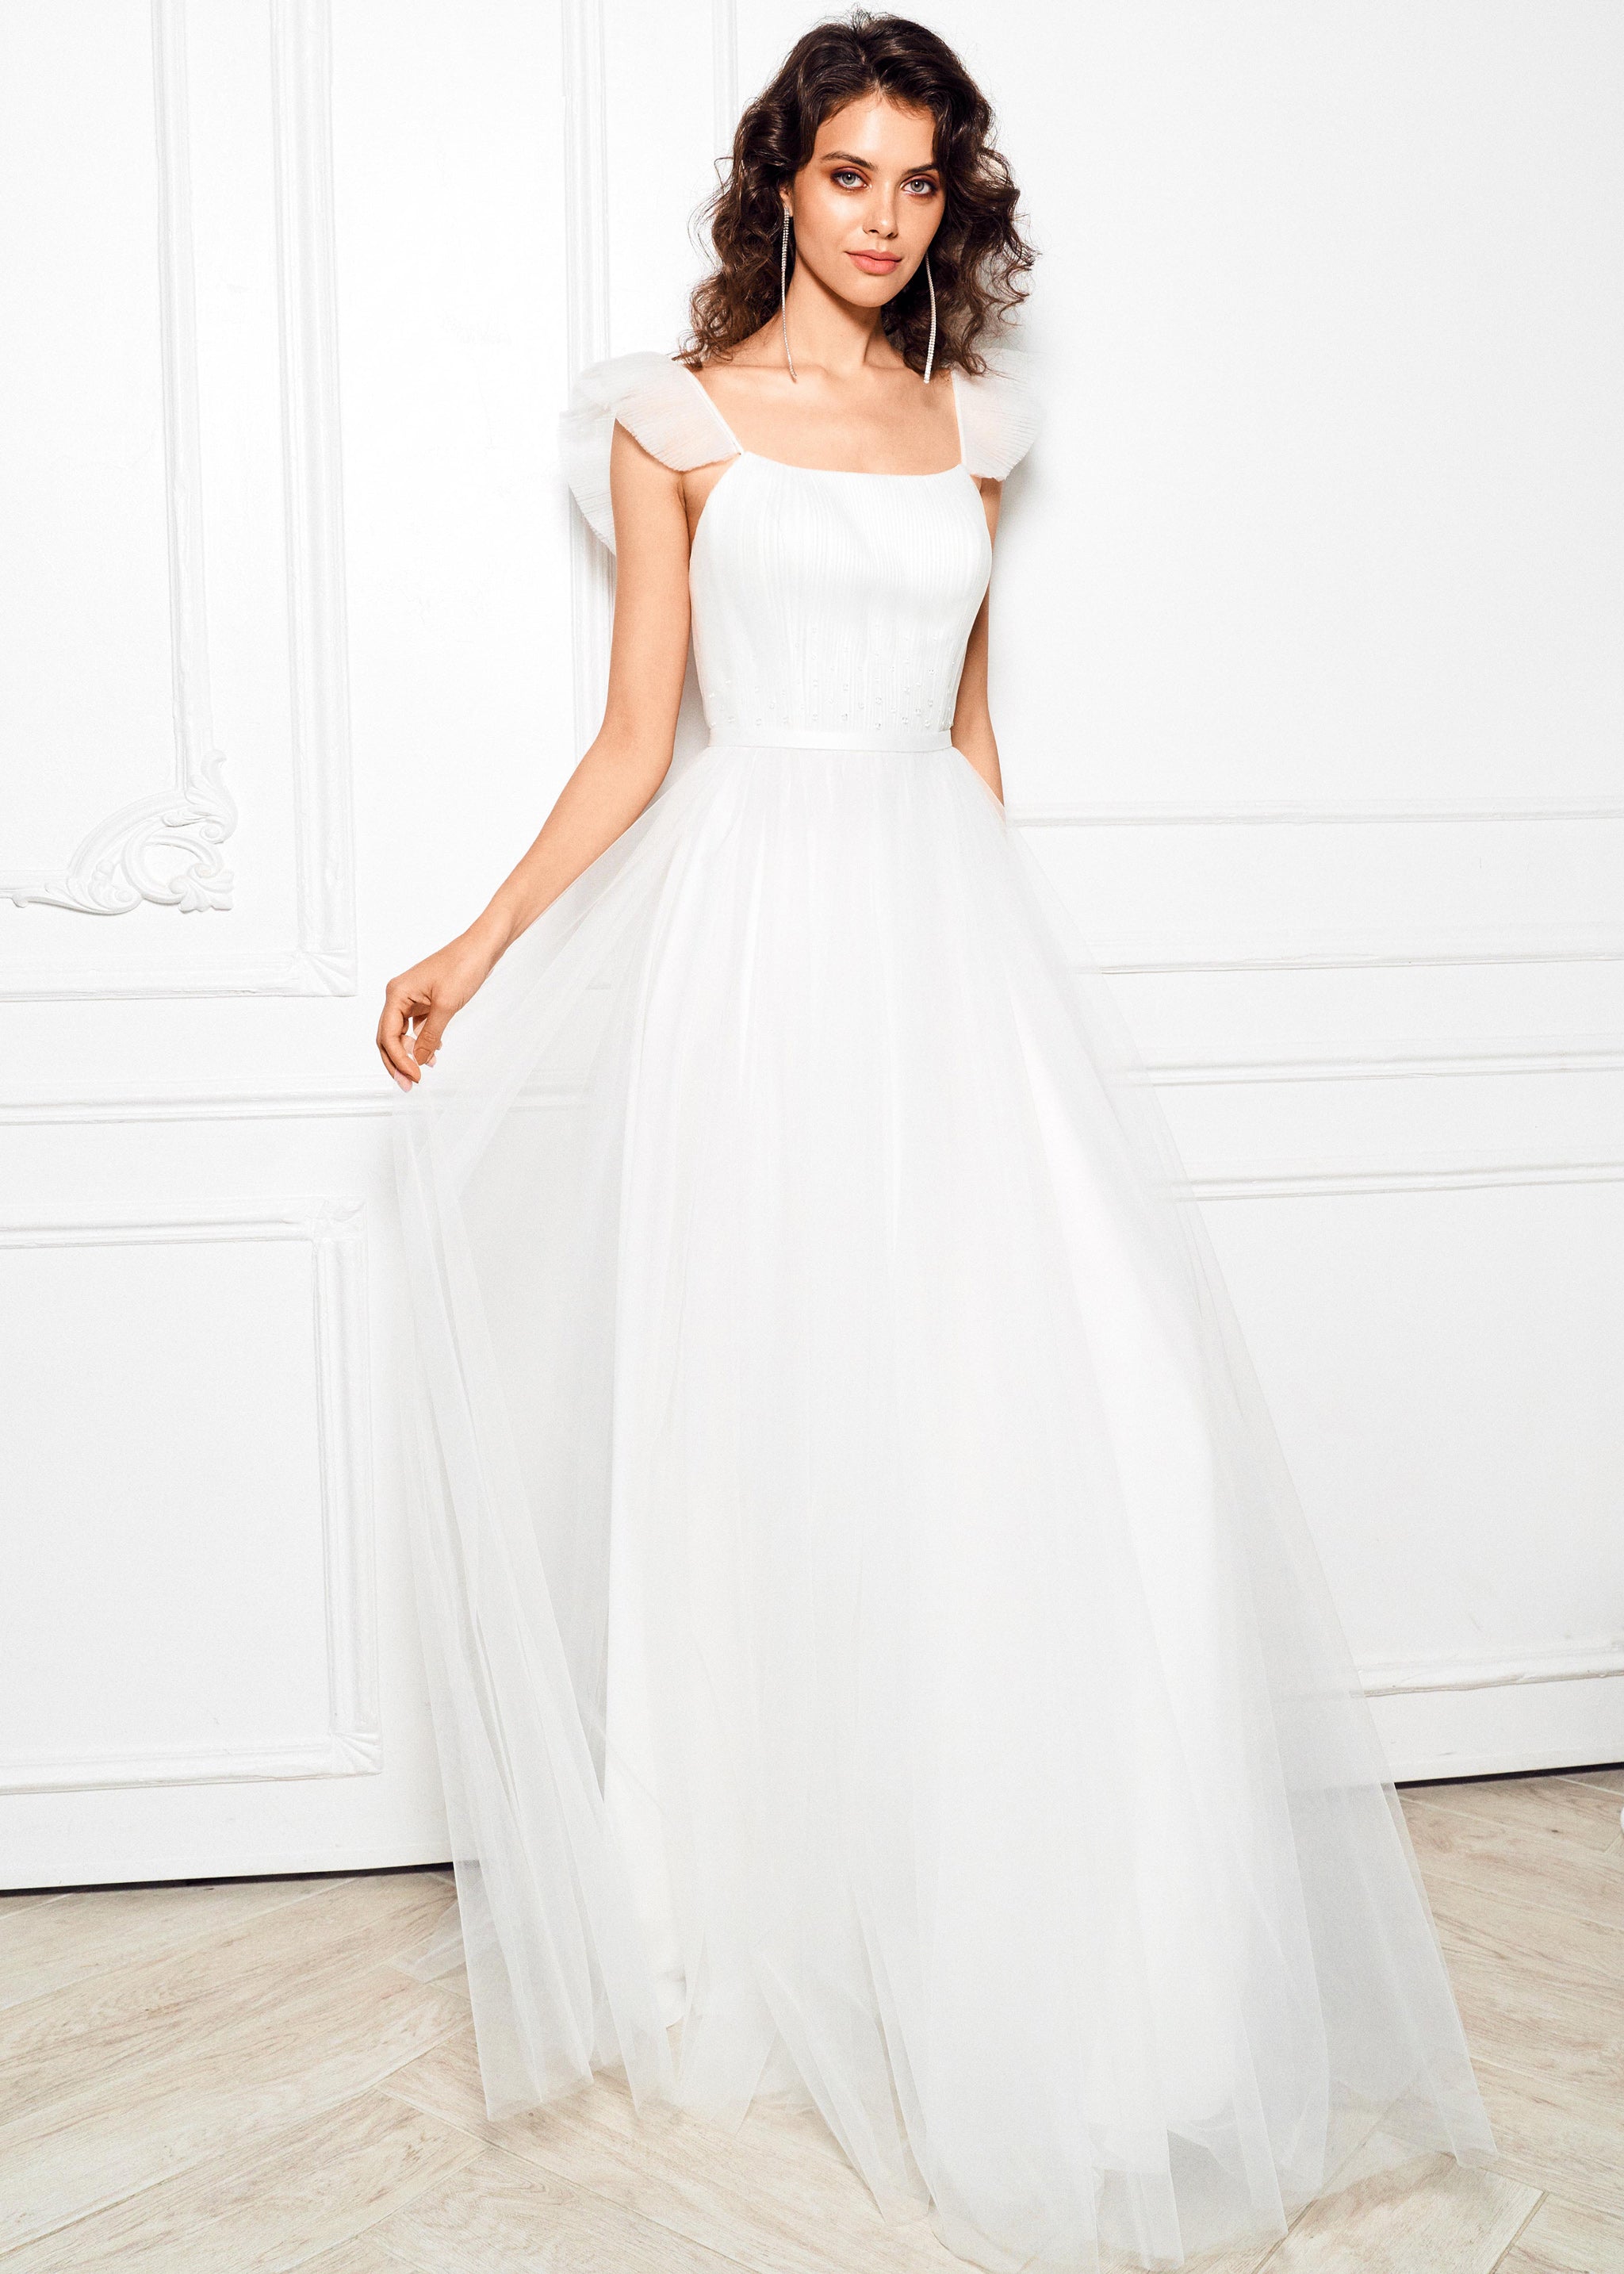 Tulle wedding dress. Light white wedding dress.